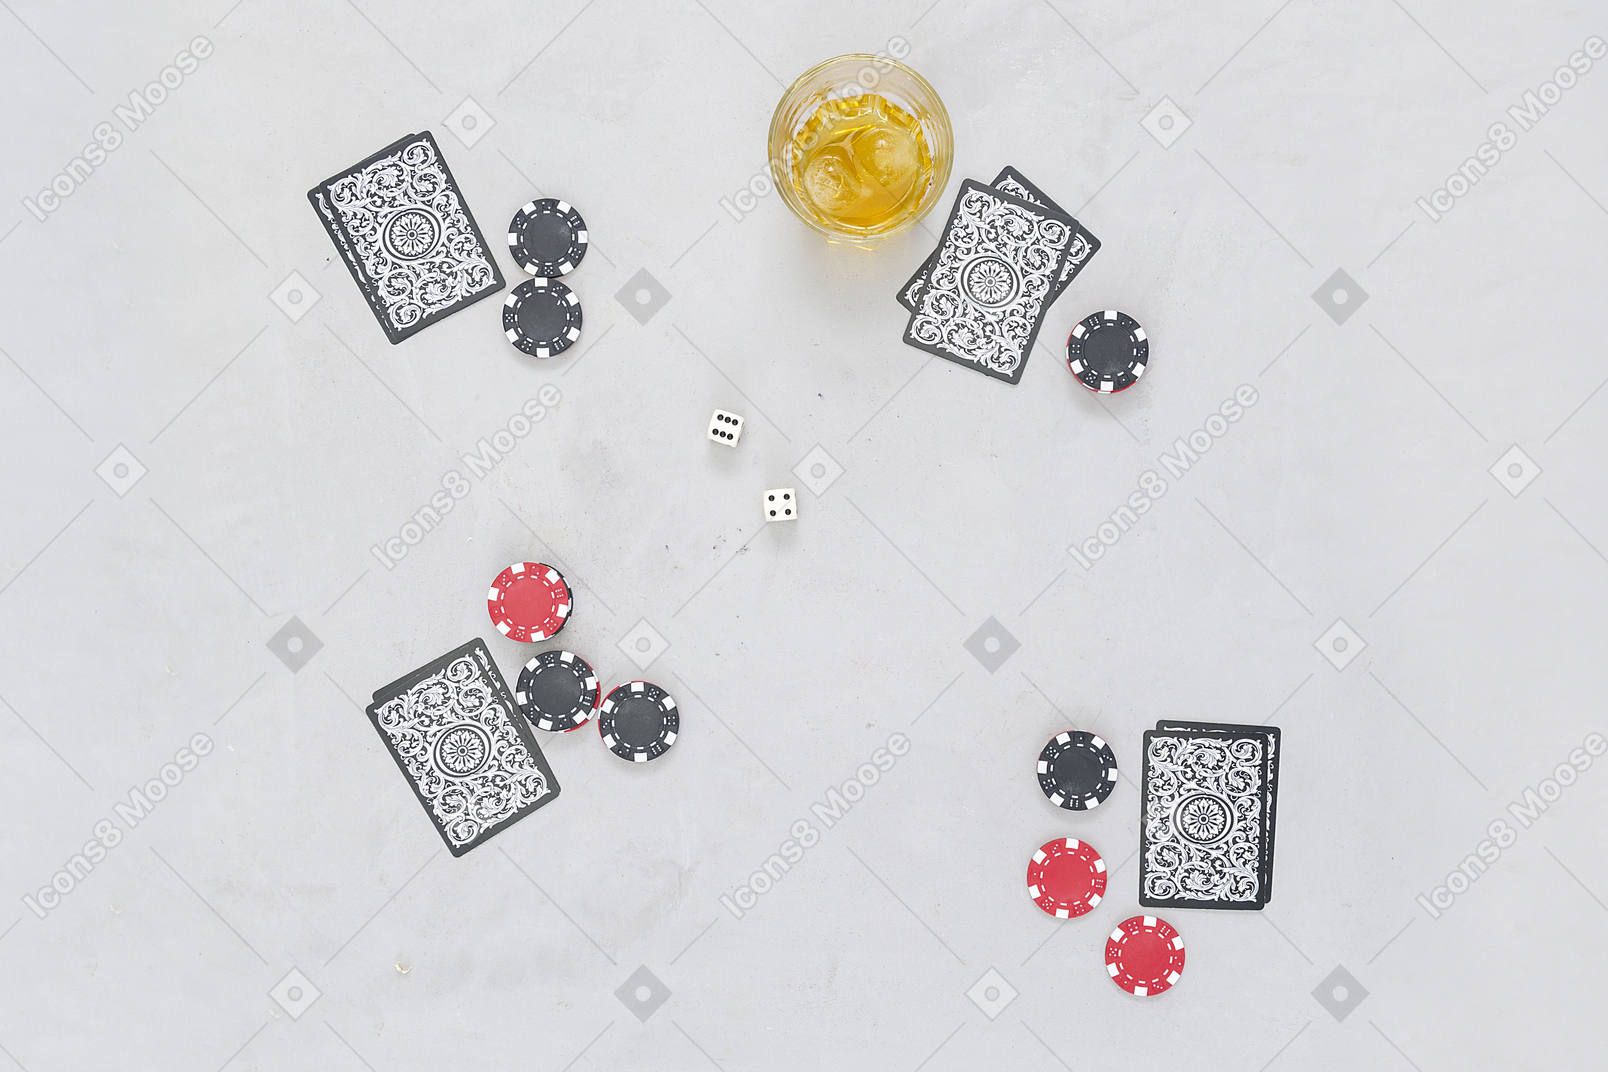 Les jeux de cartes viennent bien avec les boissons alcoolisées